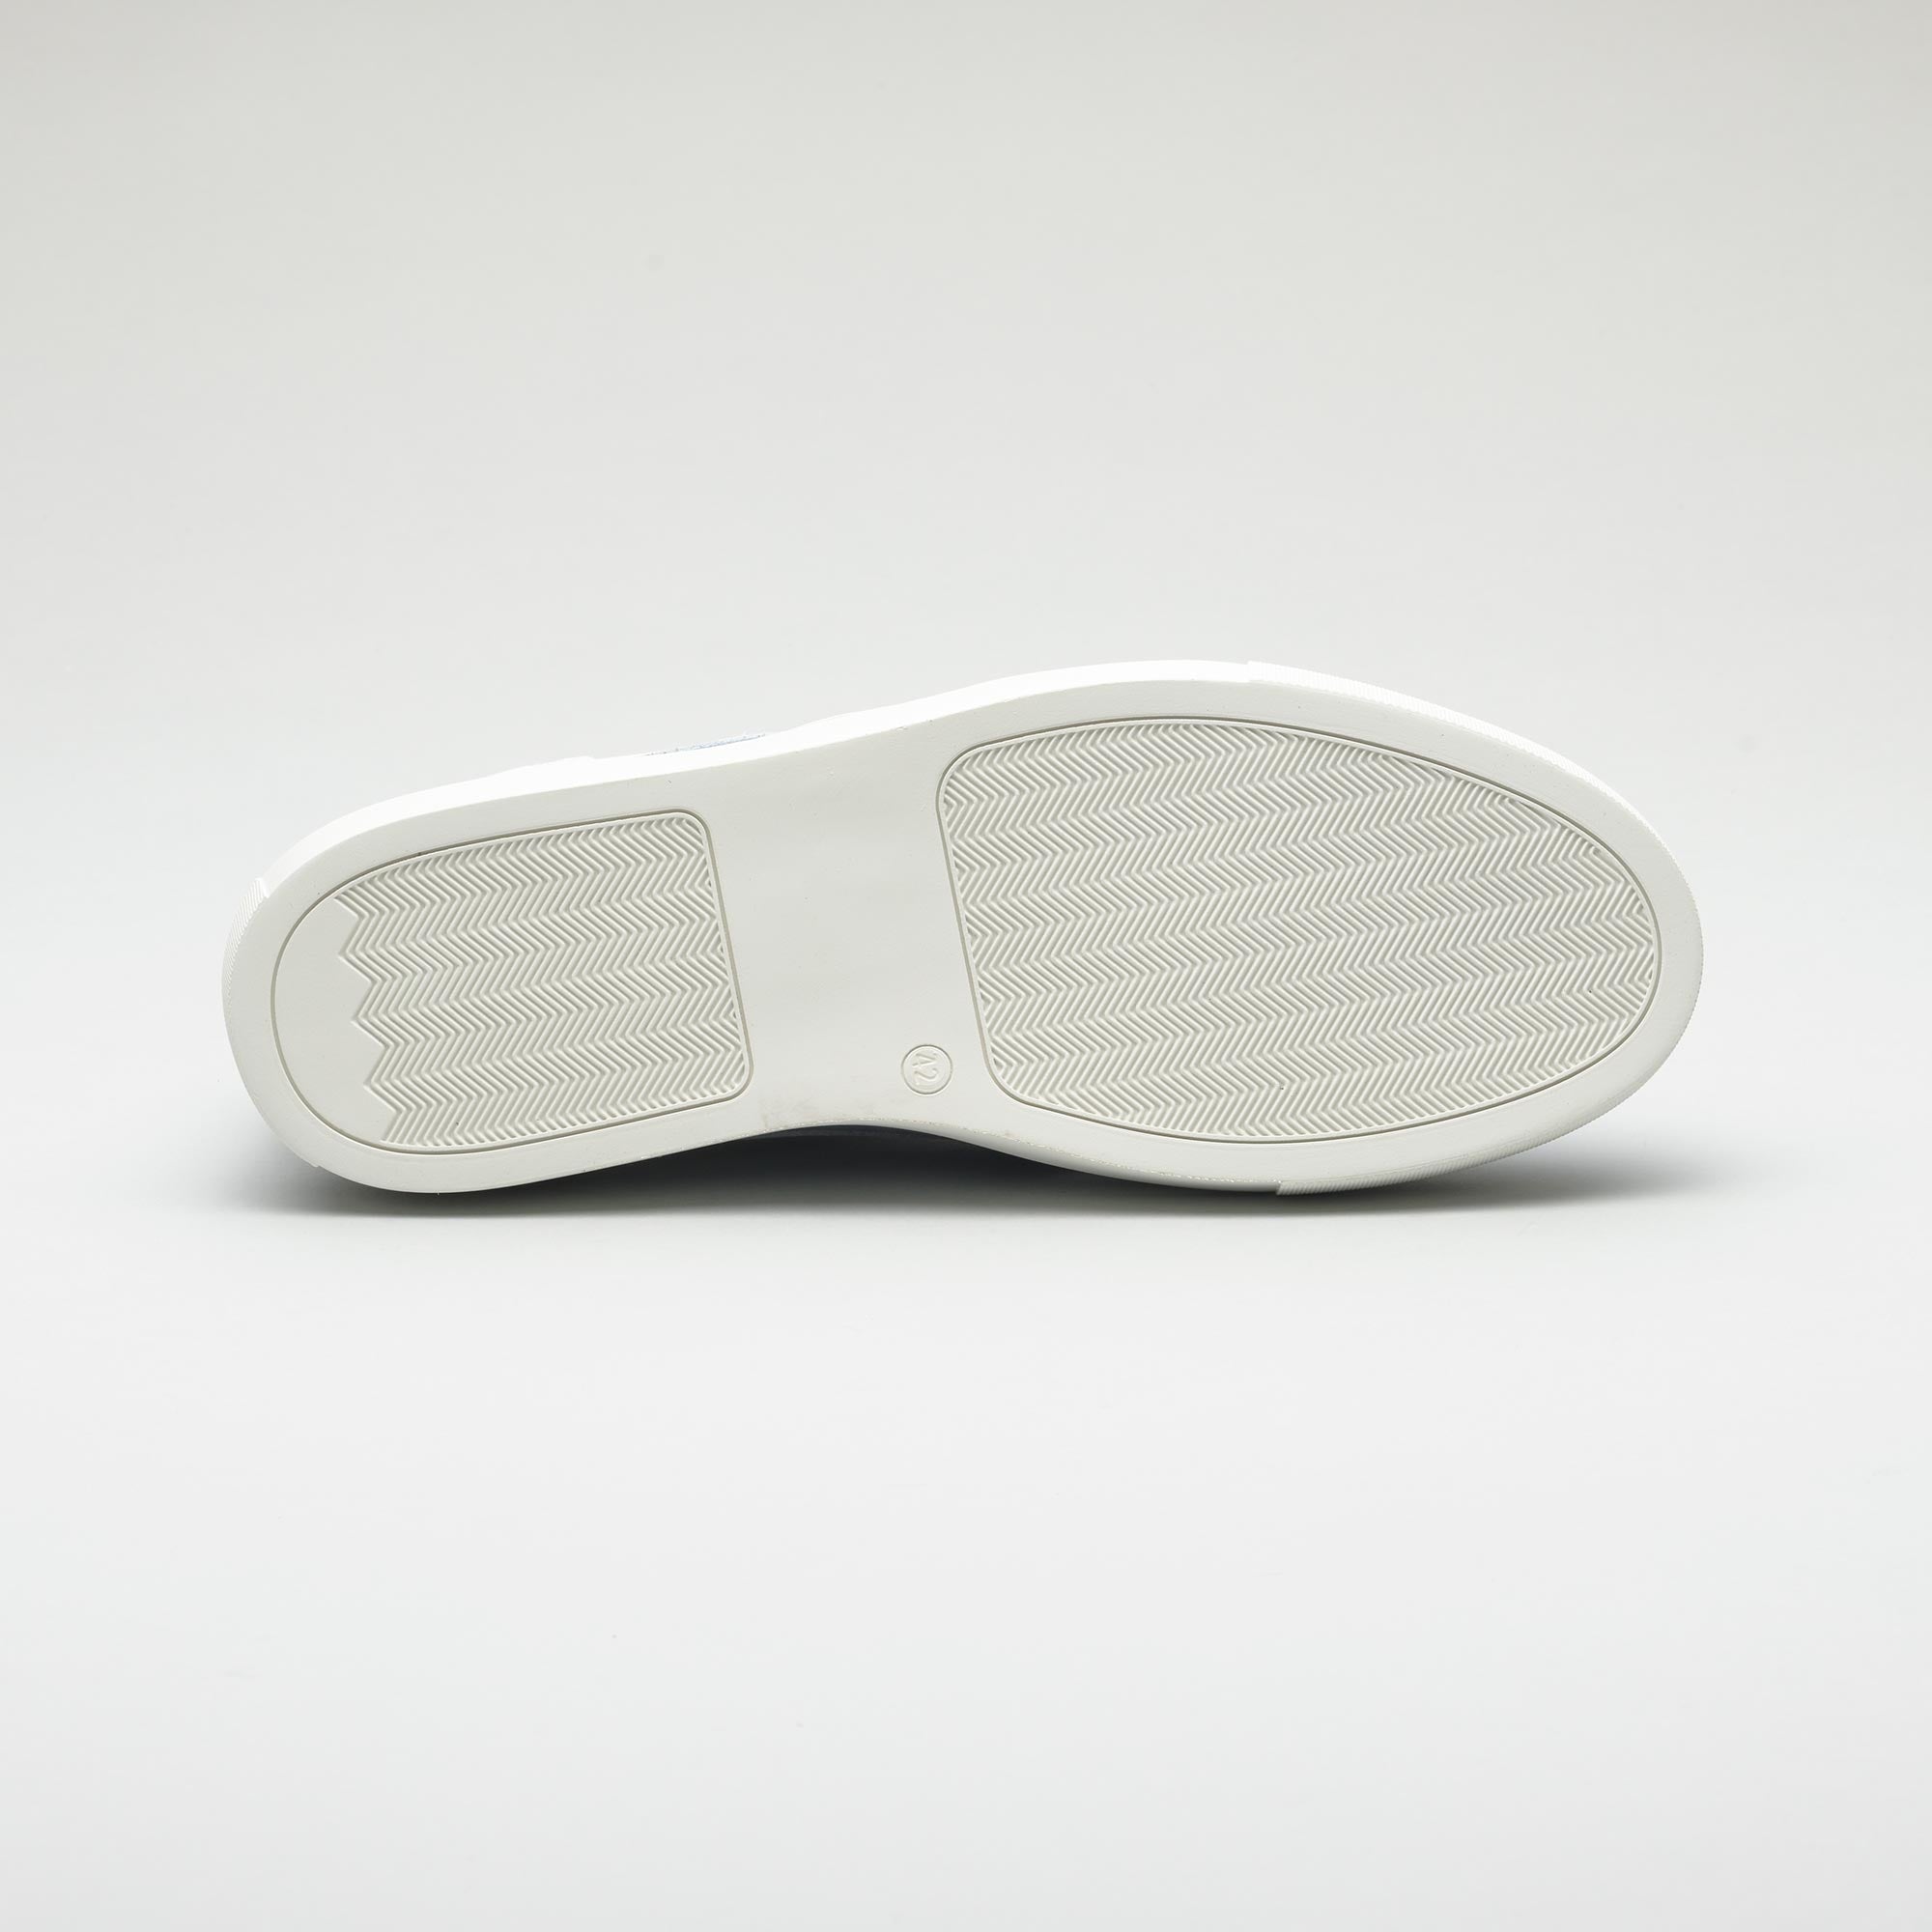 Otho Men's Luxury Sneaker White/Denim